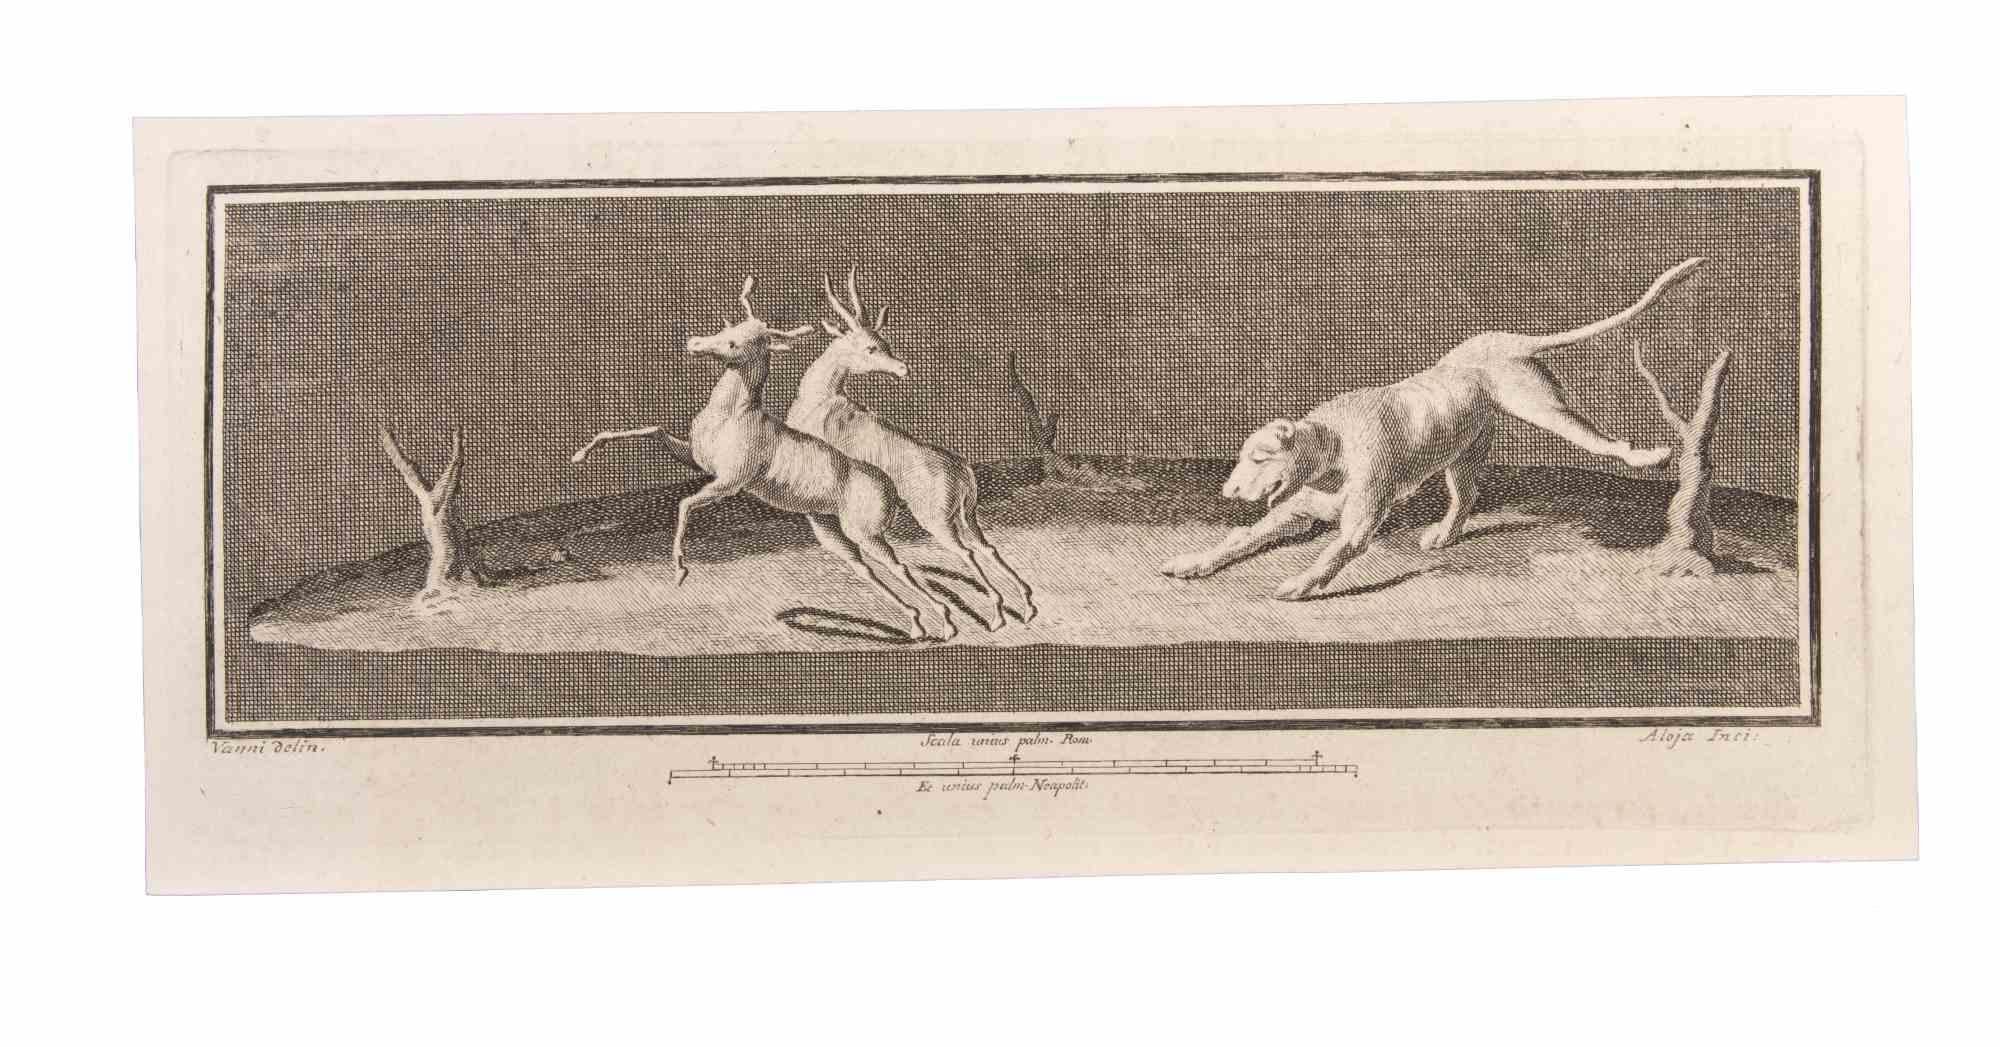 Décoration avec des animaux est une gravure réalisée par  Luigi Aloja (1783-1837).

La gravure appartient à la suite d'estampes "Antiquités d'Herculanum exposées" (titre original : "Le Antichità di Ercolano Esposte"), un volume de huit gravures des